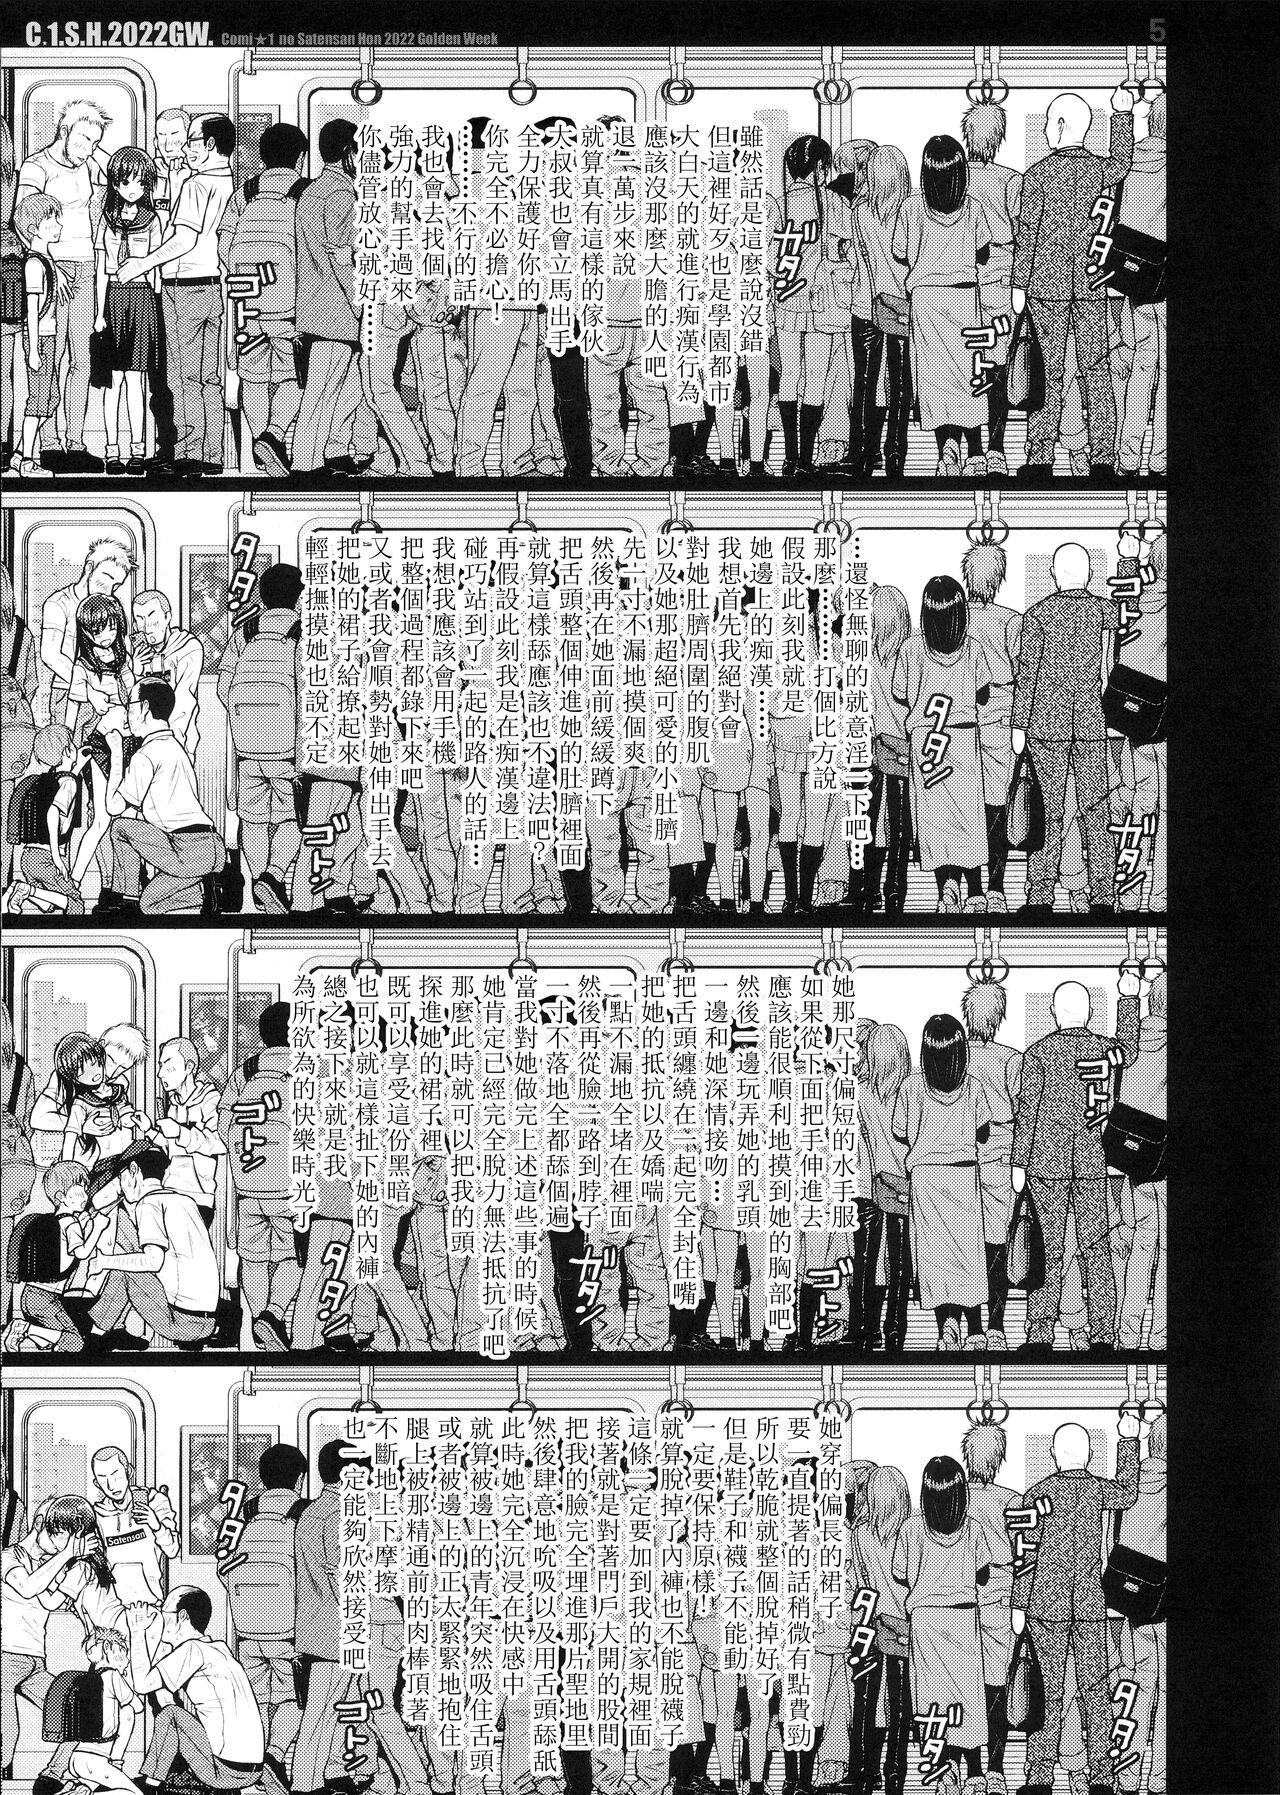 Grandpa C☆1.S.H.2022GW. - Toaru project Fuck Porn - Page 6